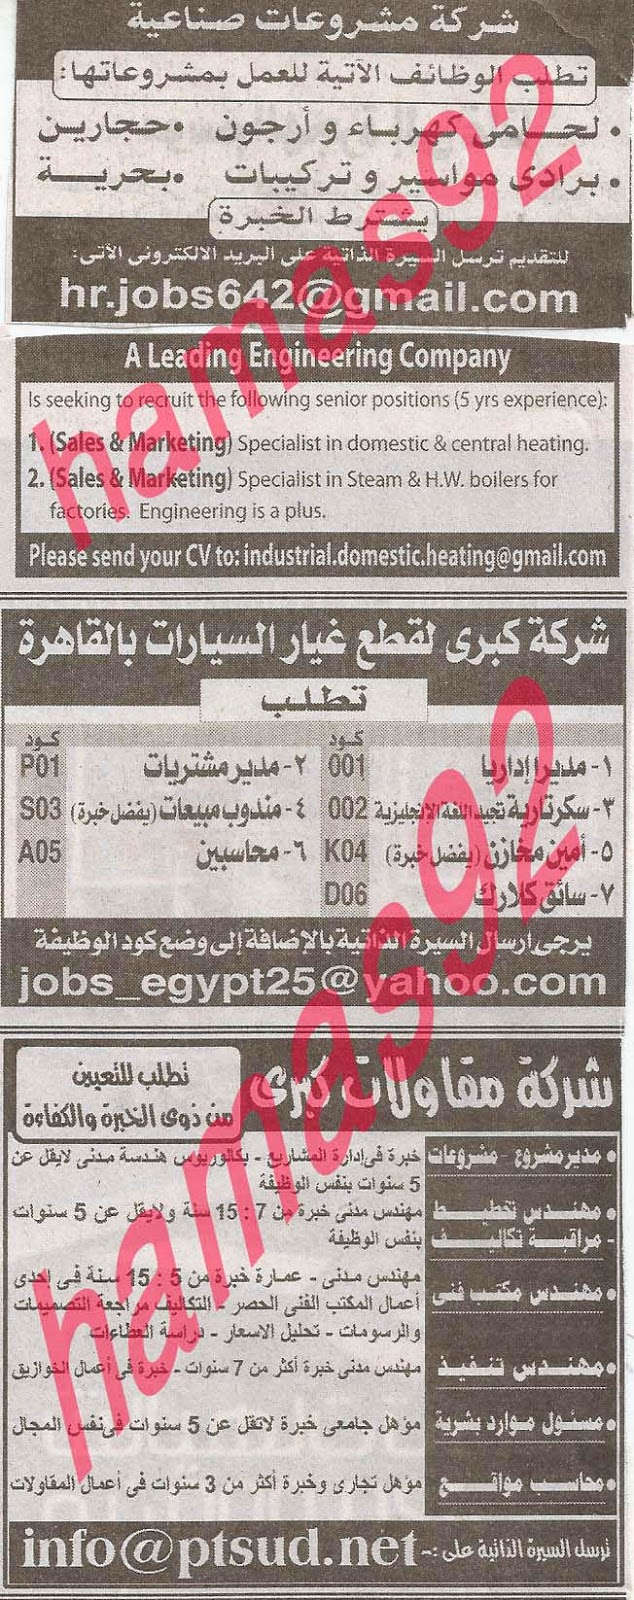 وظائف خالية فى جريدة الاهرام الجمعة 04-10-2013 8